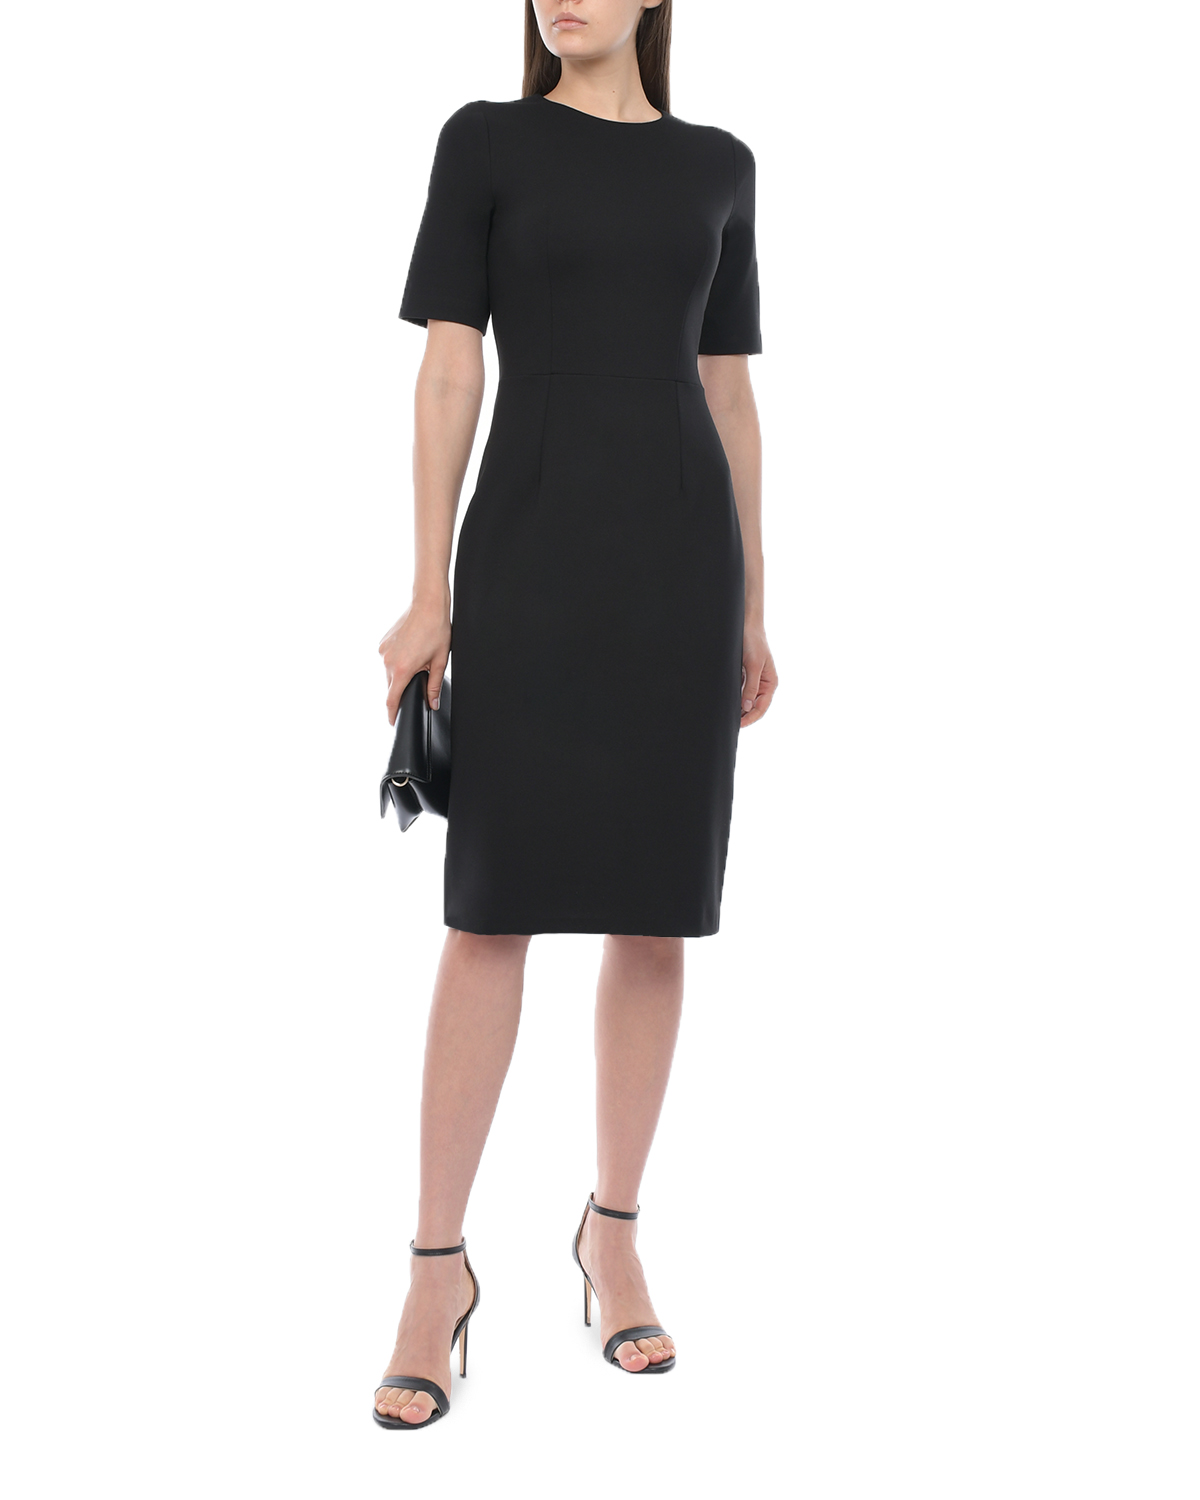 Трикотажное черное платье-футляр Dan Maralex, размер 42, цвет черный - фото 2